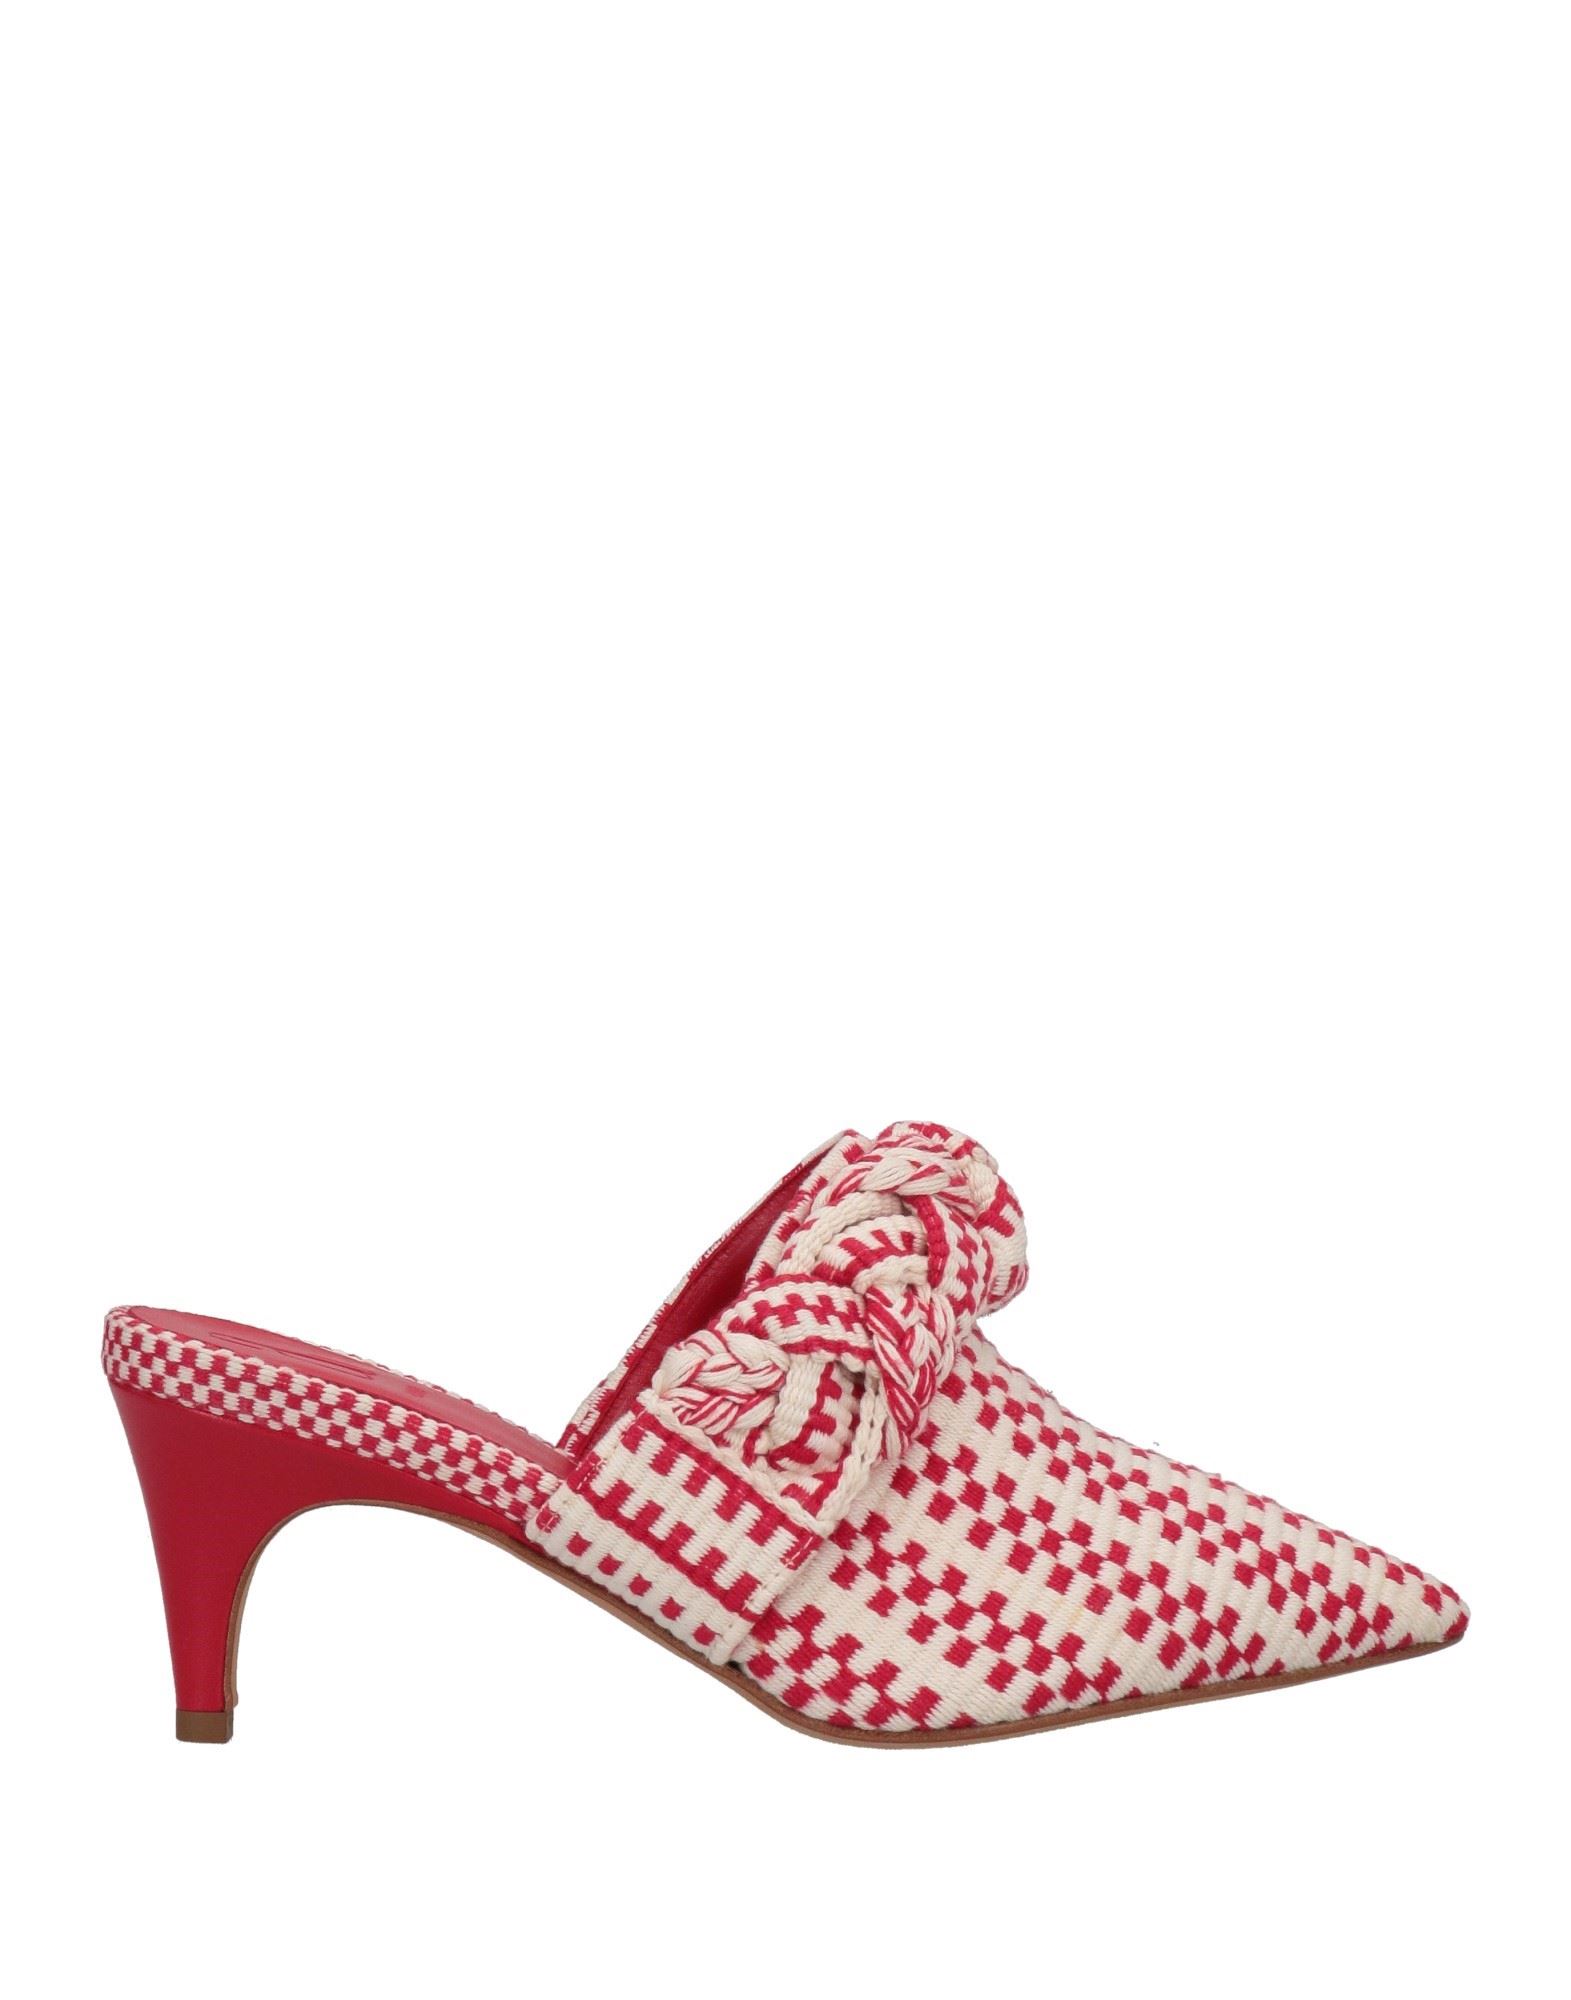 Antolina Paris Woman Mules & Clogs Red Size 9 Textile Fibers